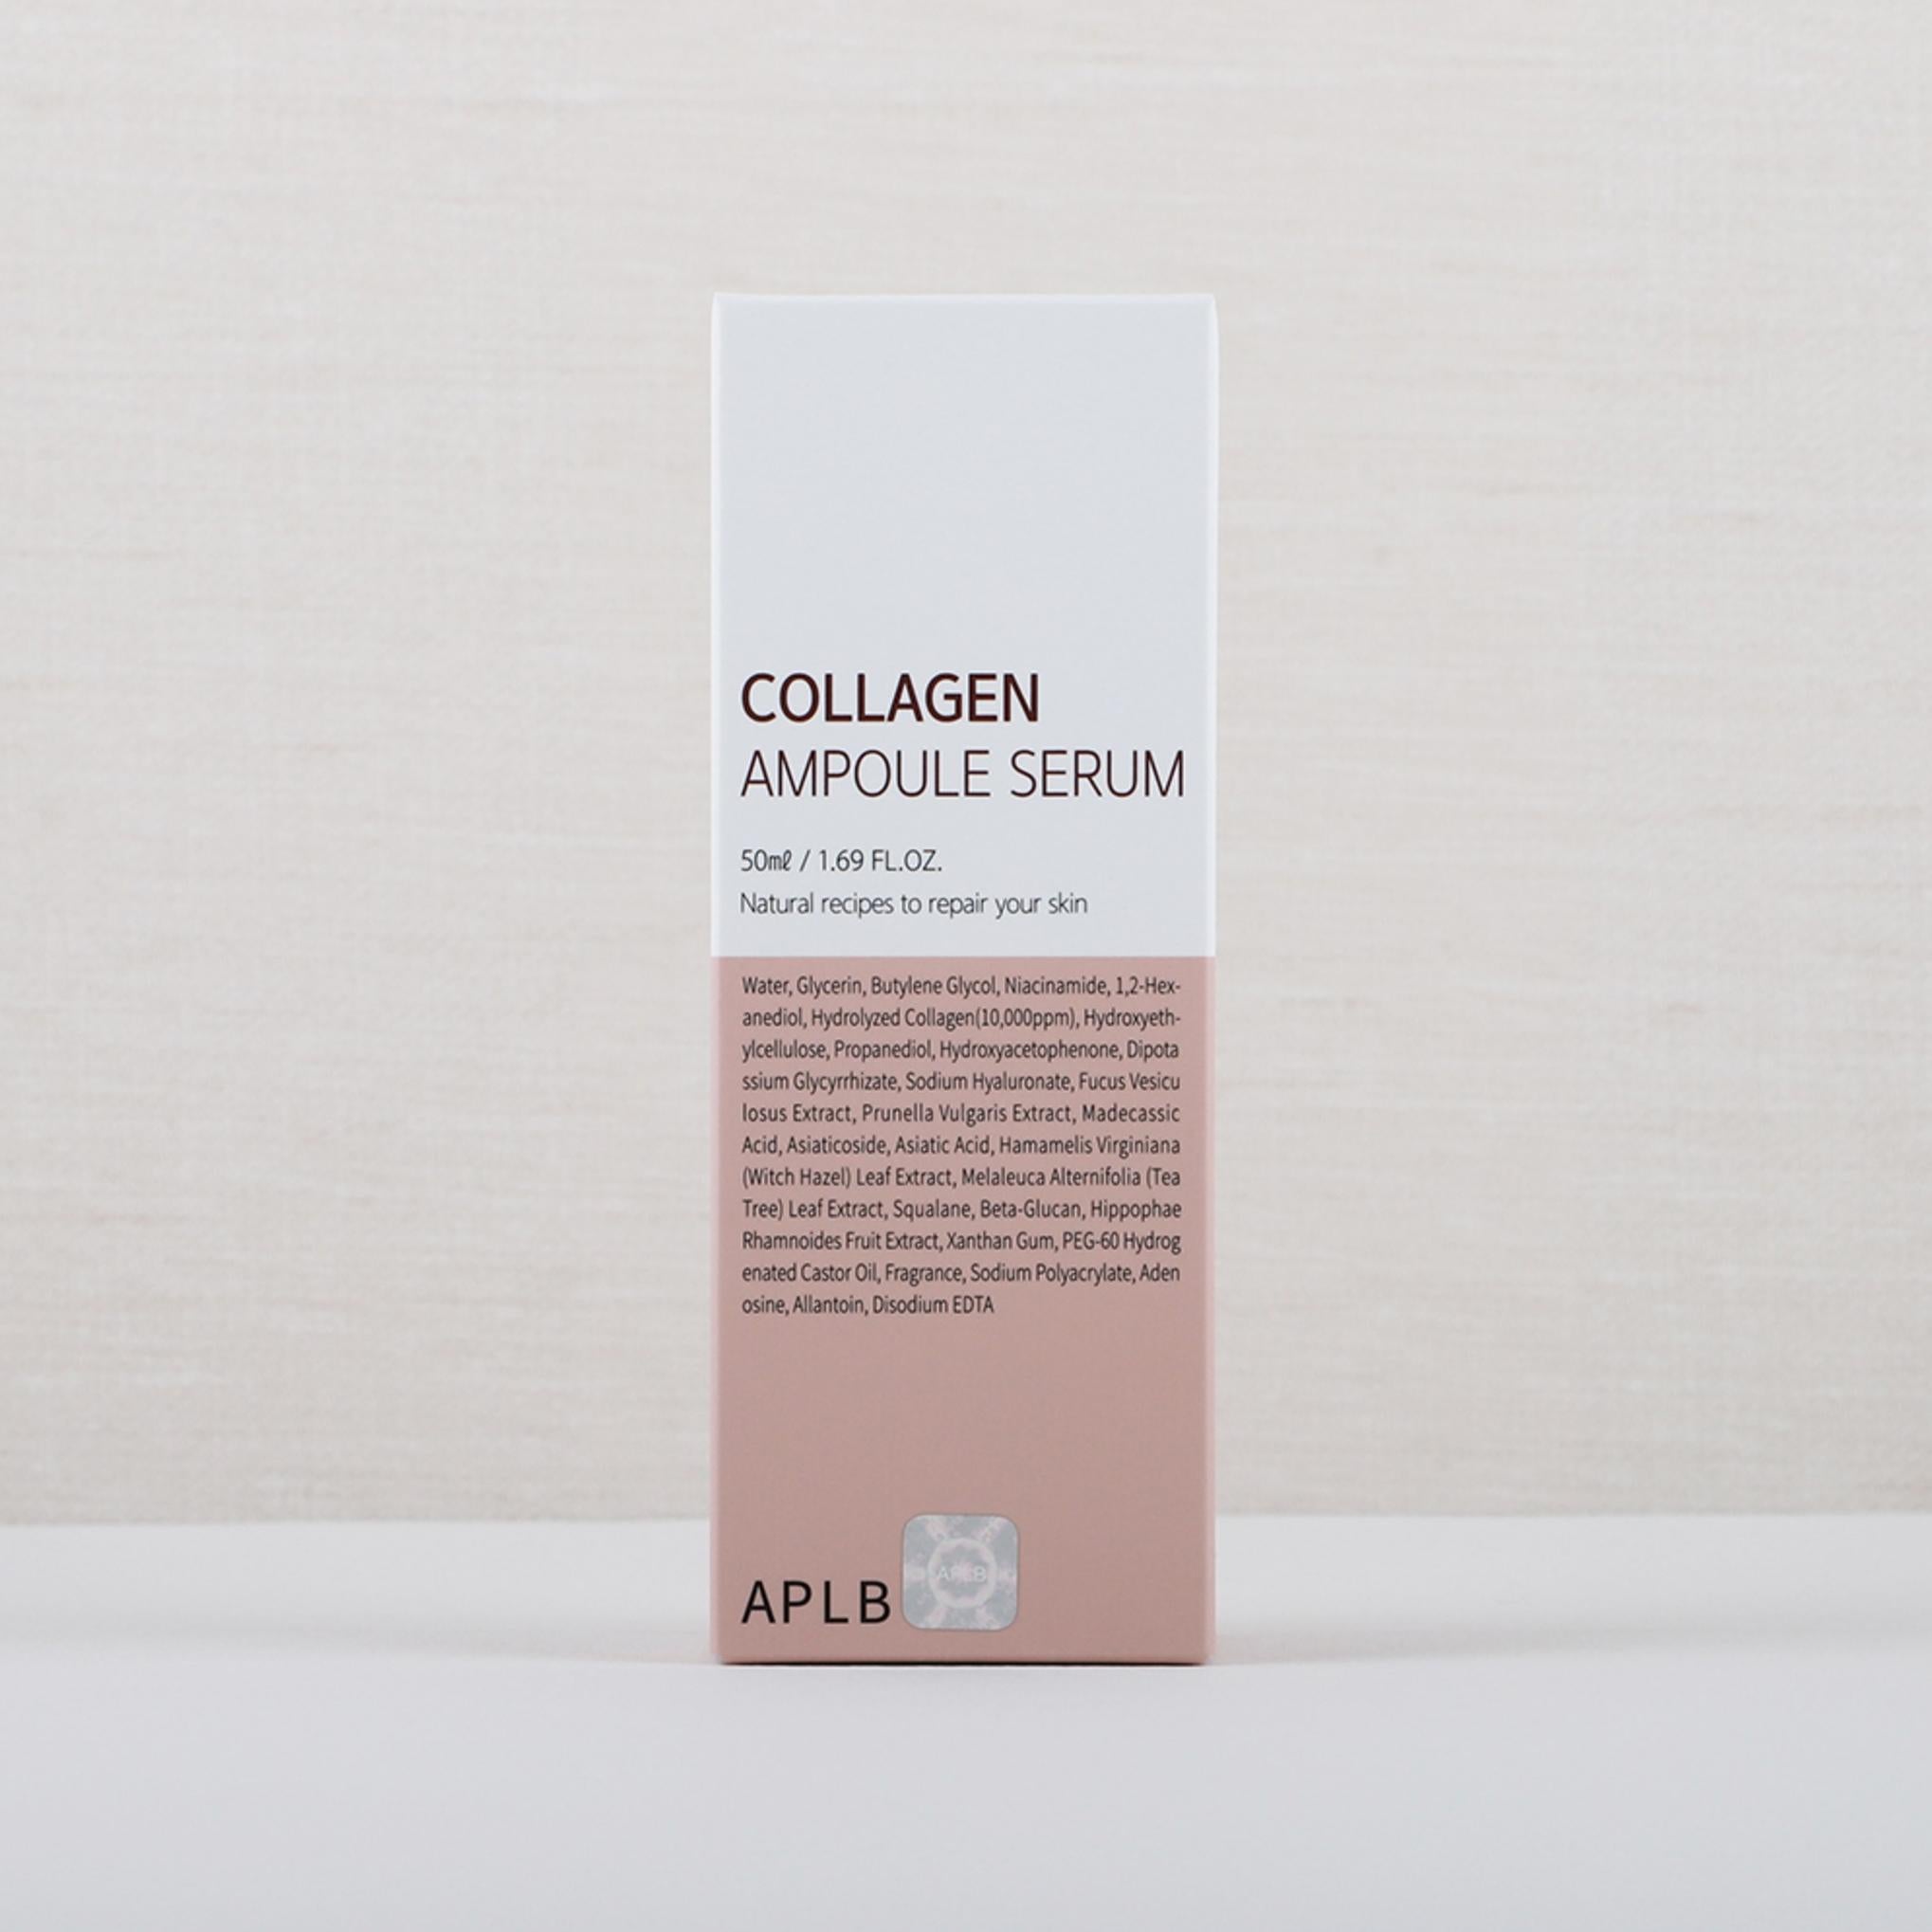 ApleB Collagen Ampoule Serum